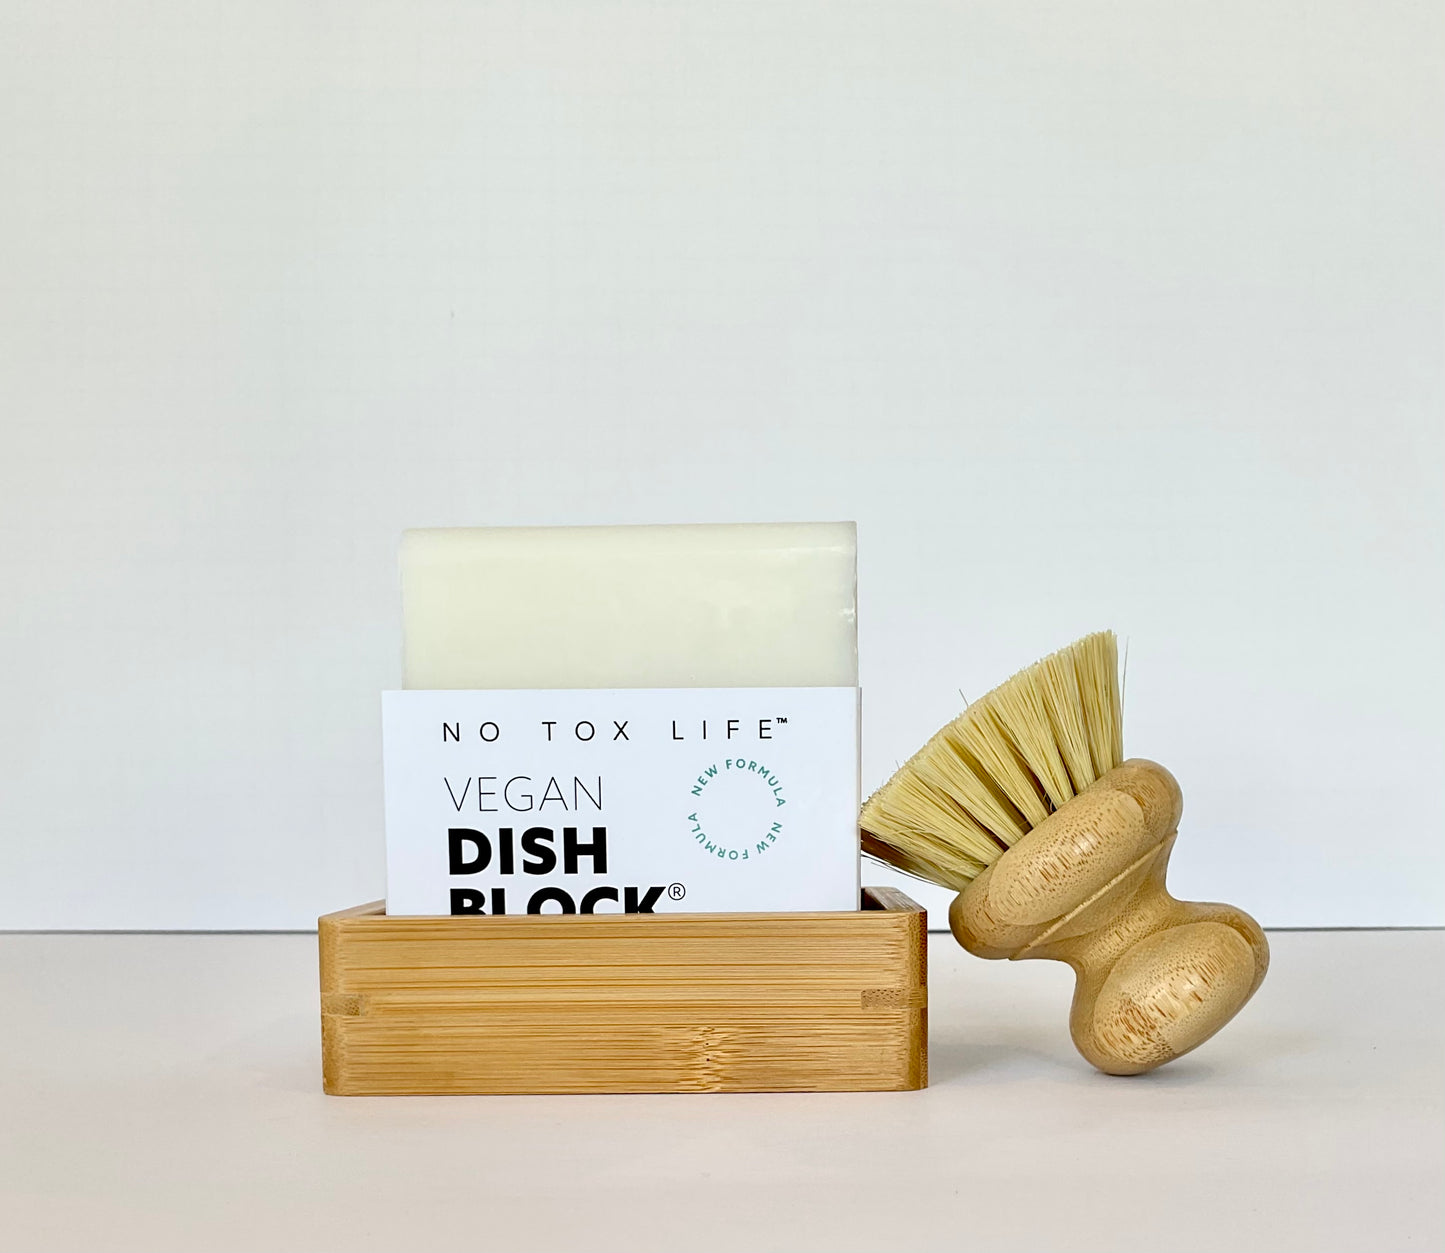 DISH BLOCK Huge Solid Dishwashing Soap